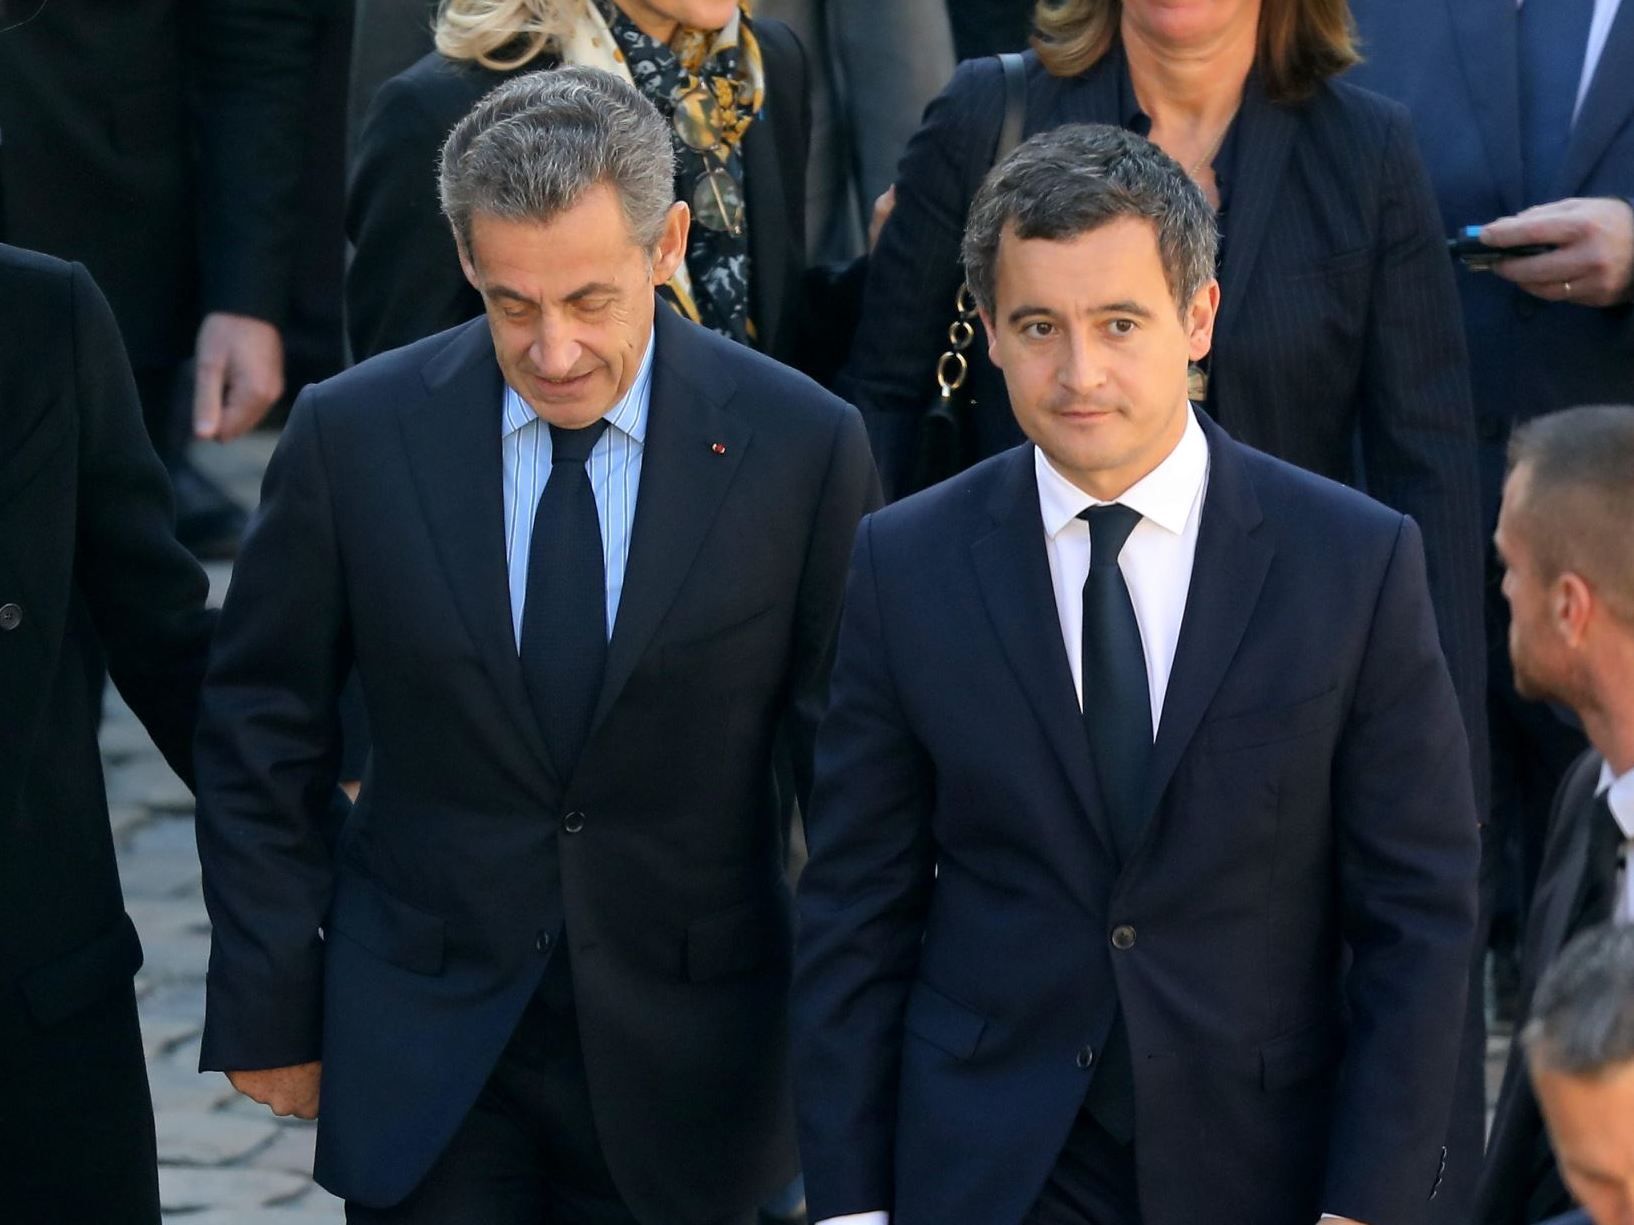 France : Une annonce forte sur les droits des étrangers, l’élève Darmanin dépasse le maître Sarkozy